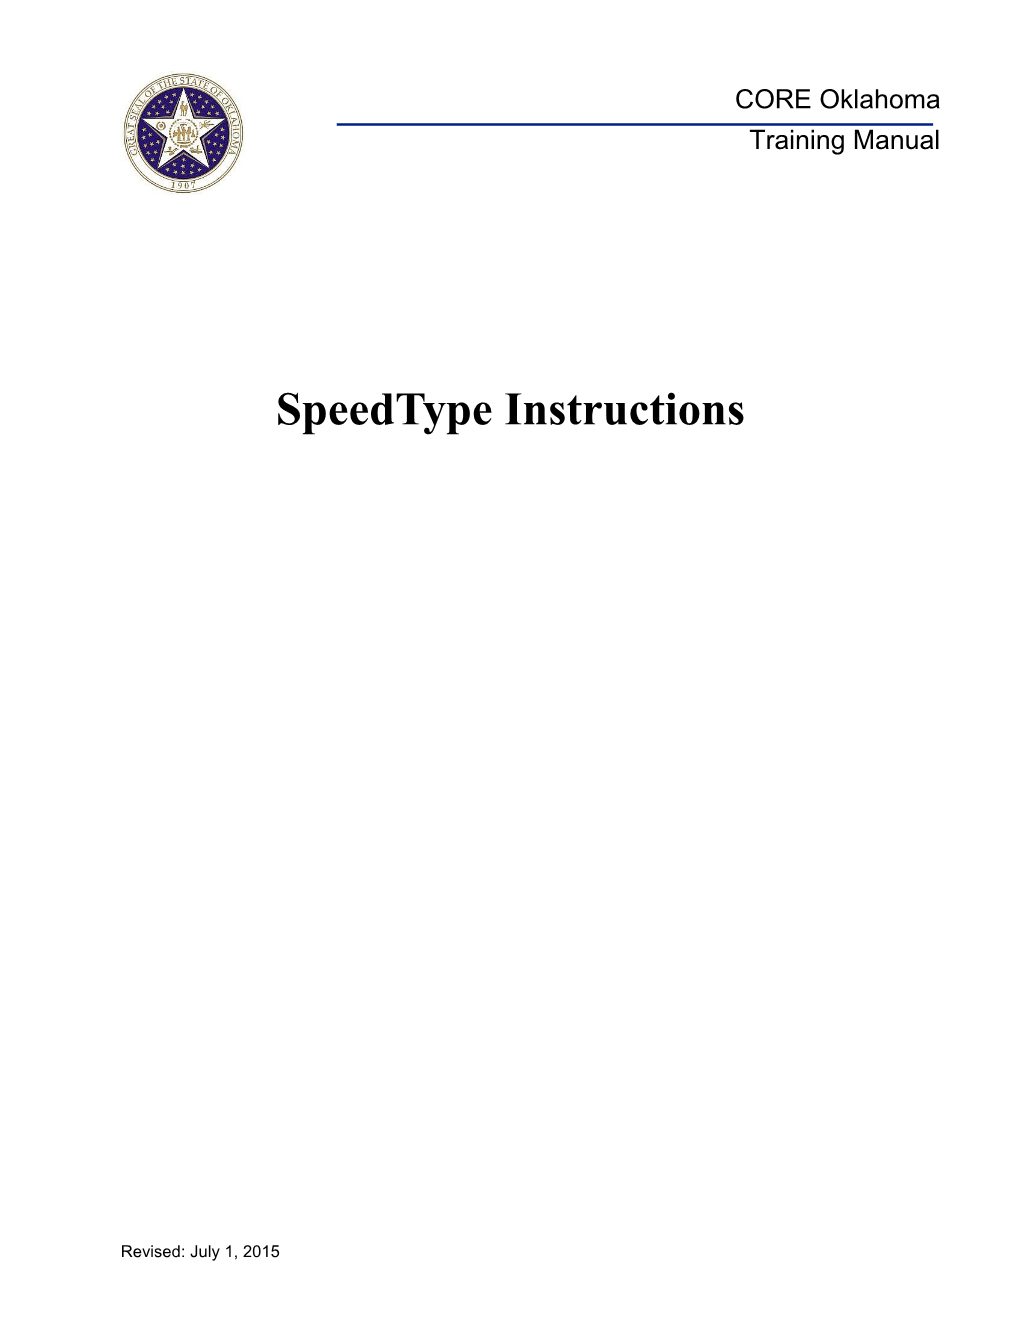 Speedtype Instructions